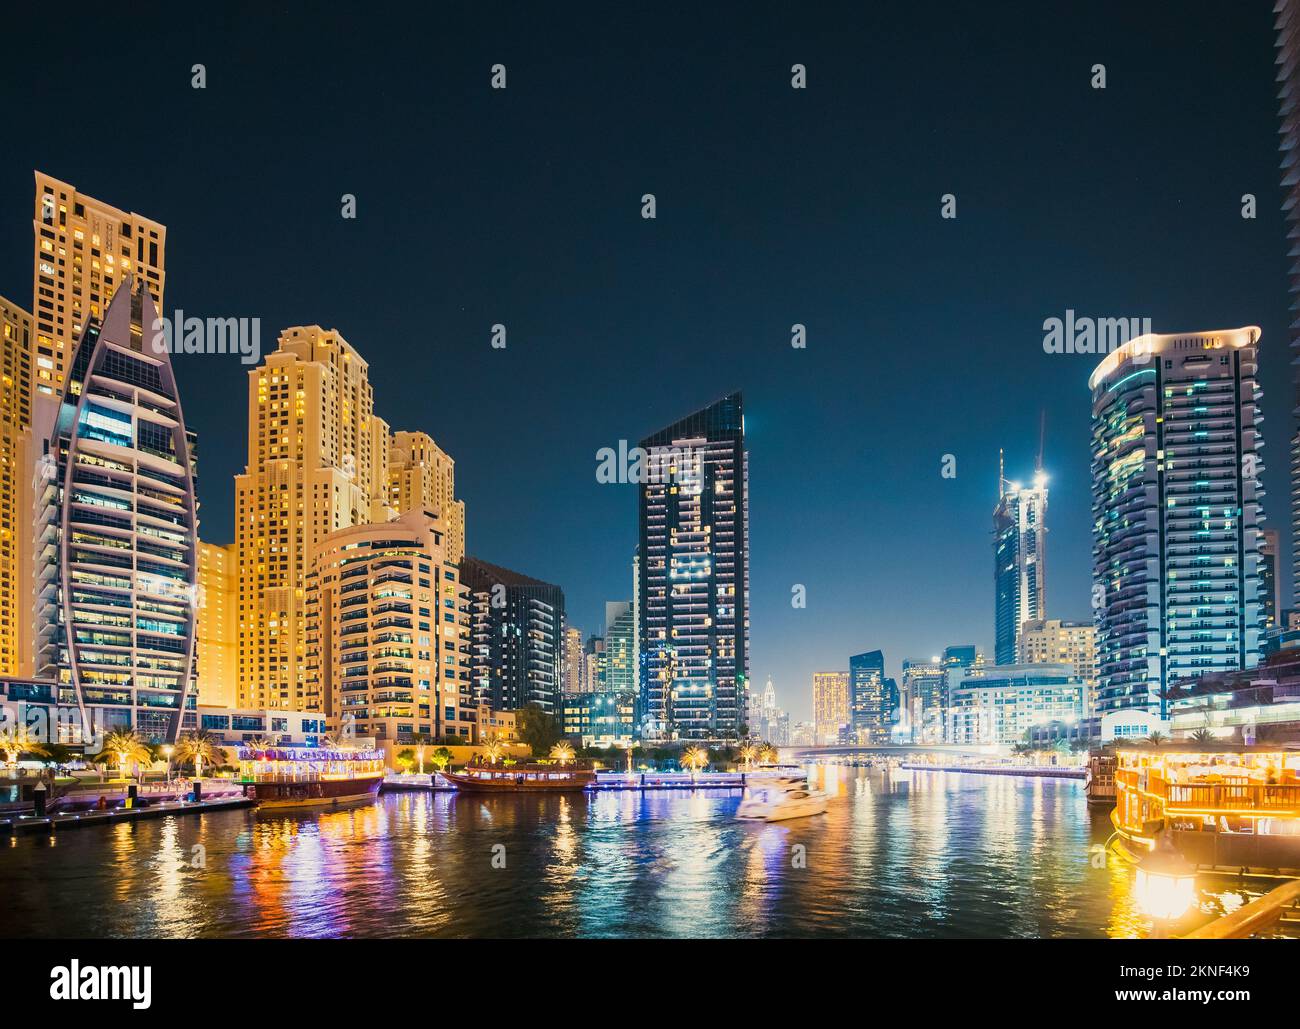 Vue nocturne du gratte-ciel du quartier résidentiel de la marina de Dubaï et du bateau touristique, bateau touristique naviguant sur la marina de Dubaï Banque D'Images